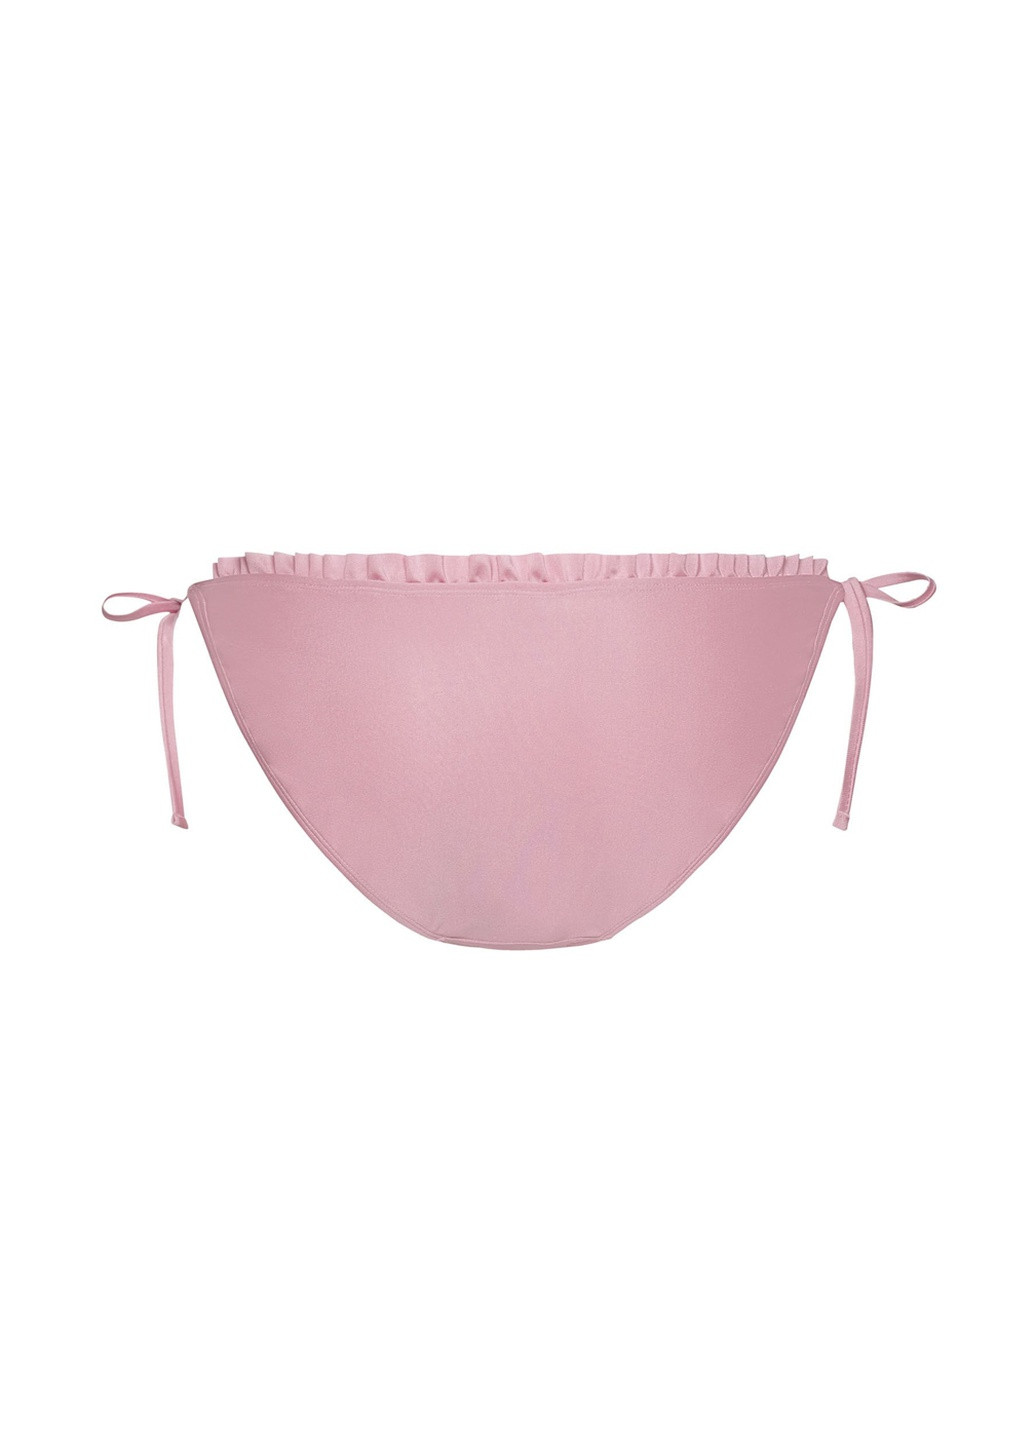 Розовые женские купальные трусики-плавки бикини на завязках однотонные Esmara